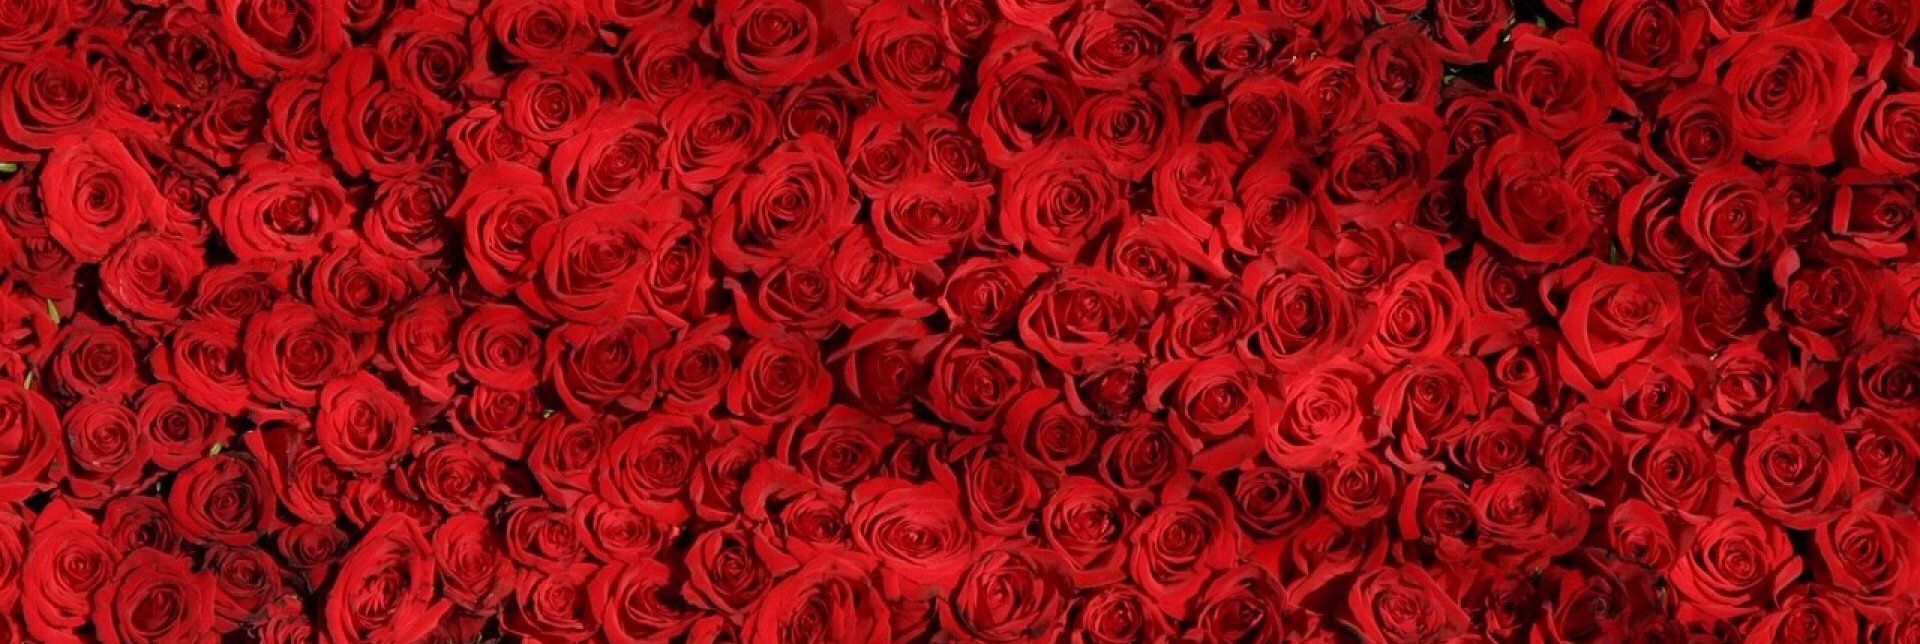 Romantický pobyt - Postel s nebesy plná růží